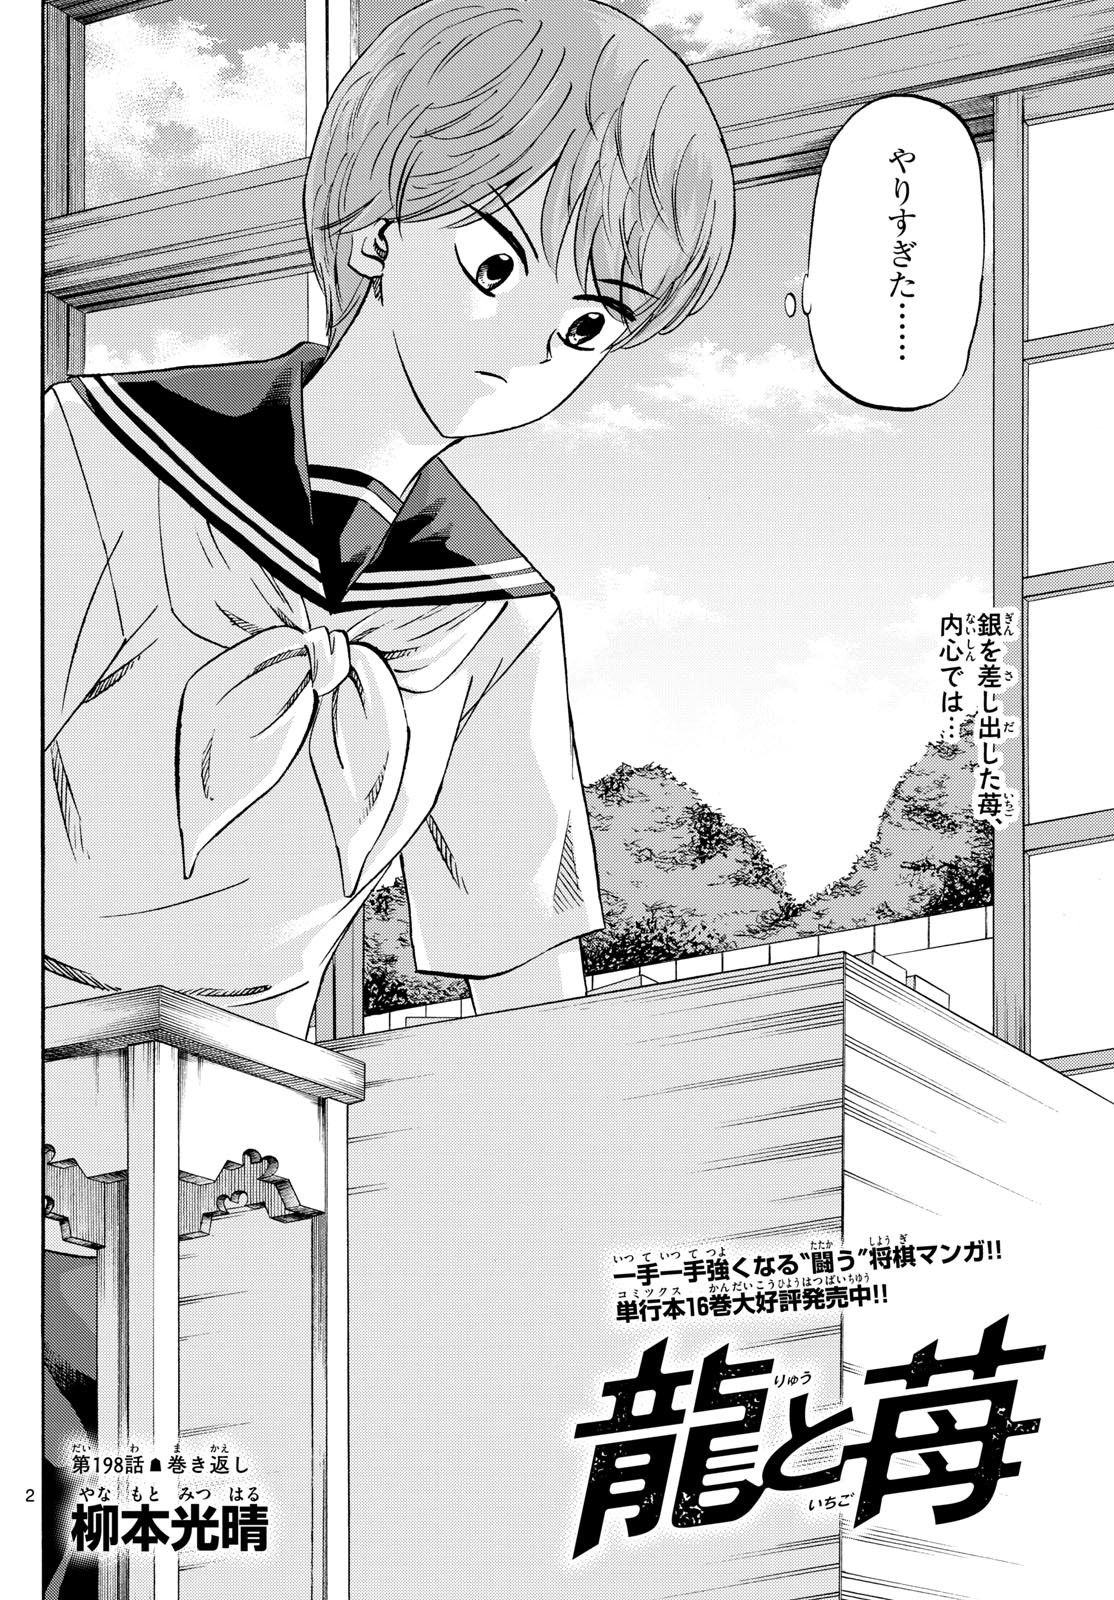 Ryu-to-Ichigo - Chapter 198 - Page 2